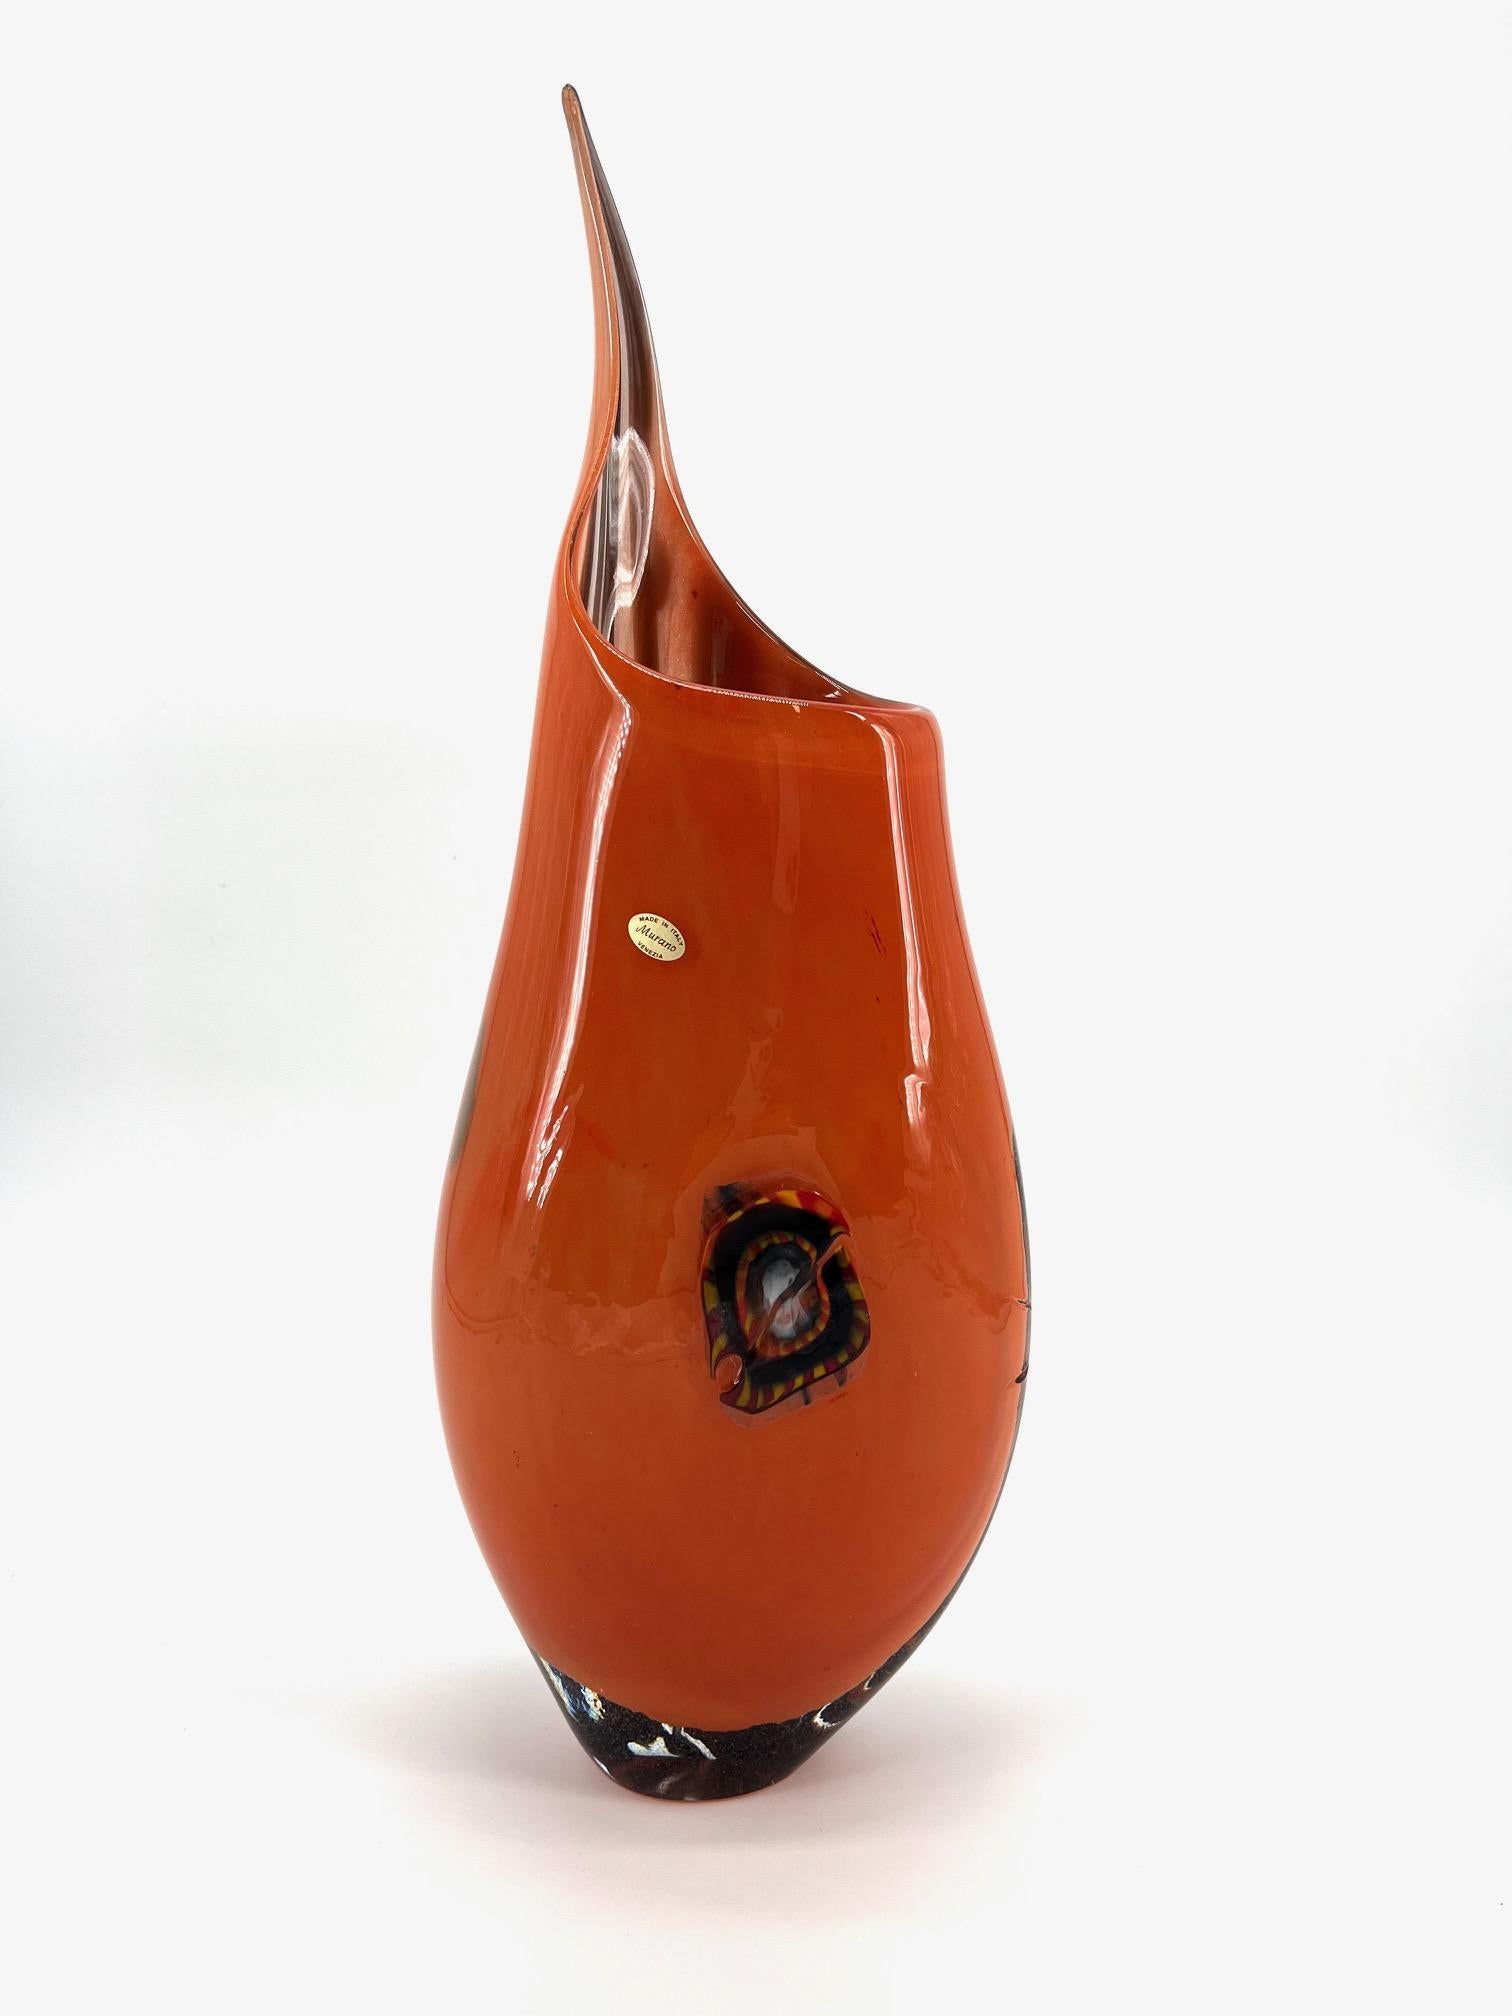 Unser Ziel ist die Emotion durch die Schaffung von Murano-Glaskunstwerken.
 
Diese Kunstvase wird in unserer Werkstatt in Murano handgefertigt. Unser Meister bläst ein wunderschönes orangefarbenes Nouance-Glas und verziert es mit einer schwarzen